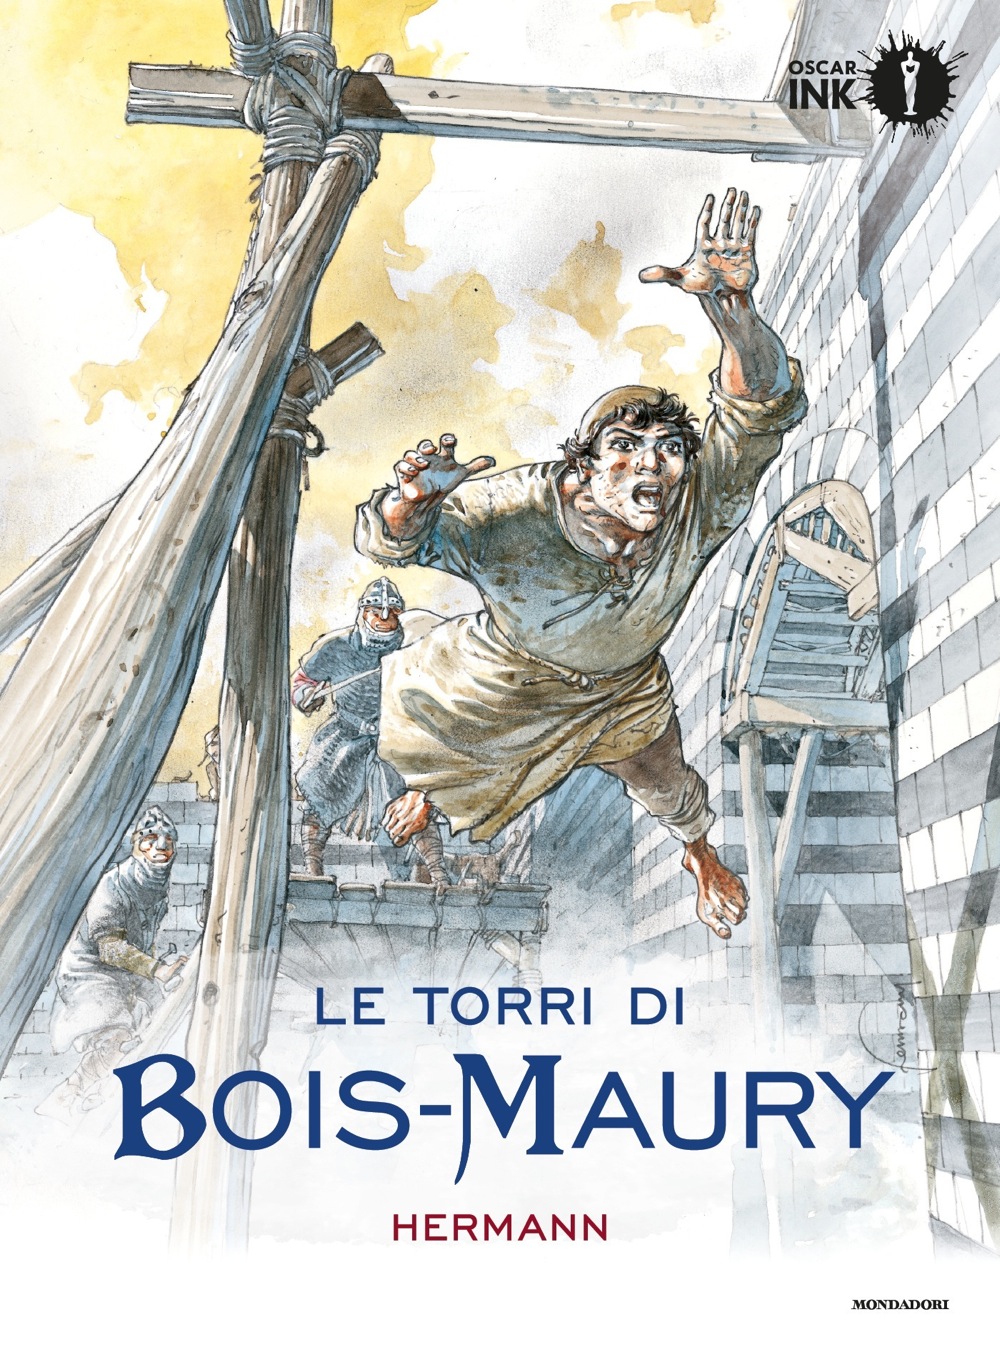 Torri Di Bois-Maury L'integrale Mondadori Oscar Ink